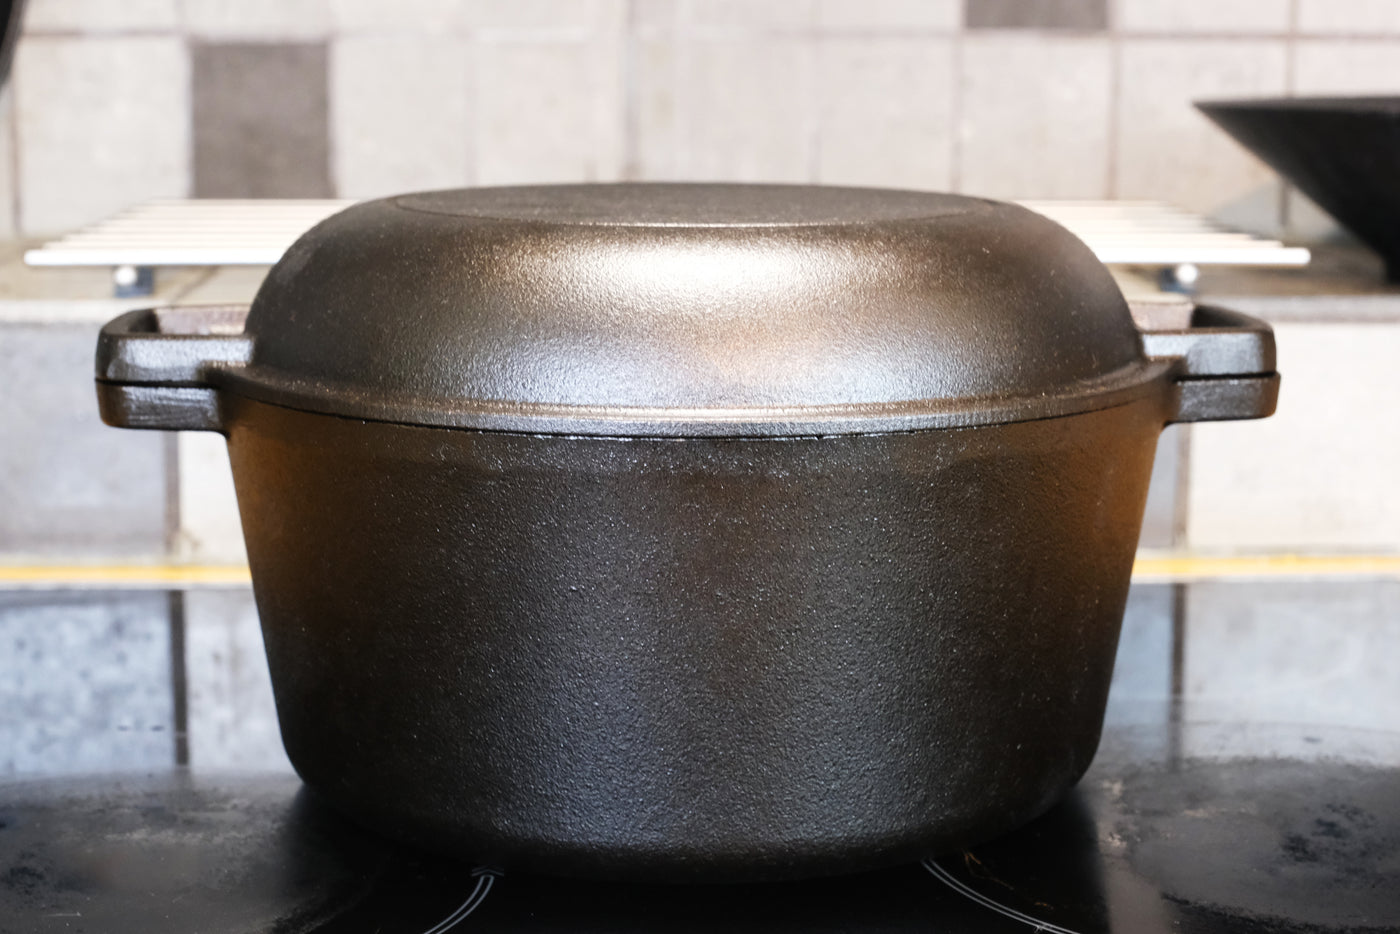 Χυτοσίδηρος Ολλανδικός Φούρνος με Καπάκι Τηγανιού - 10,23” (26 cm) Διάμετρος, 4,8 L